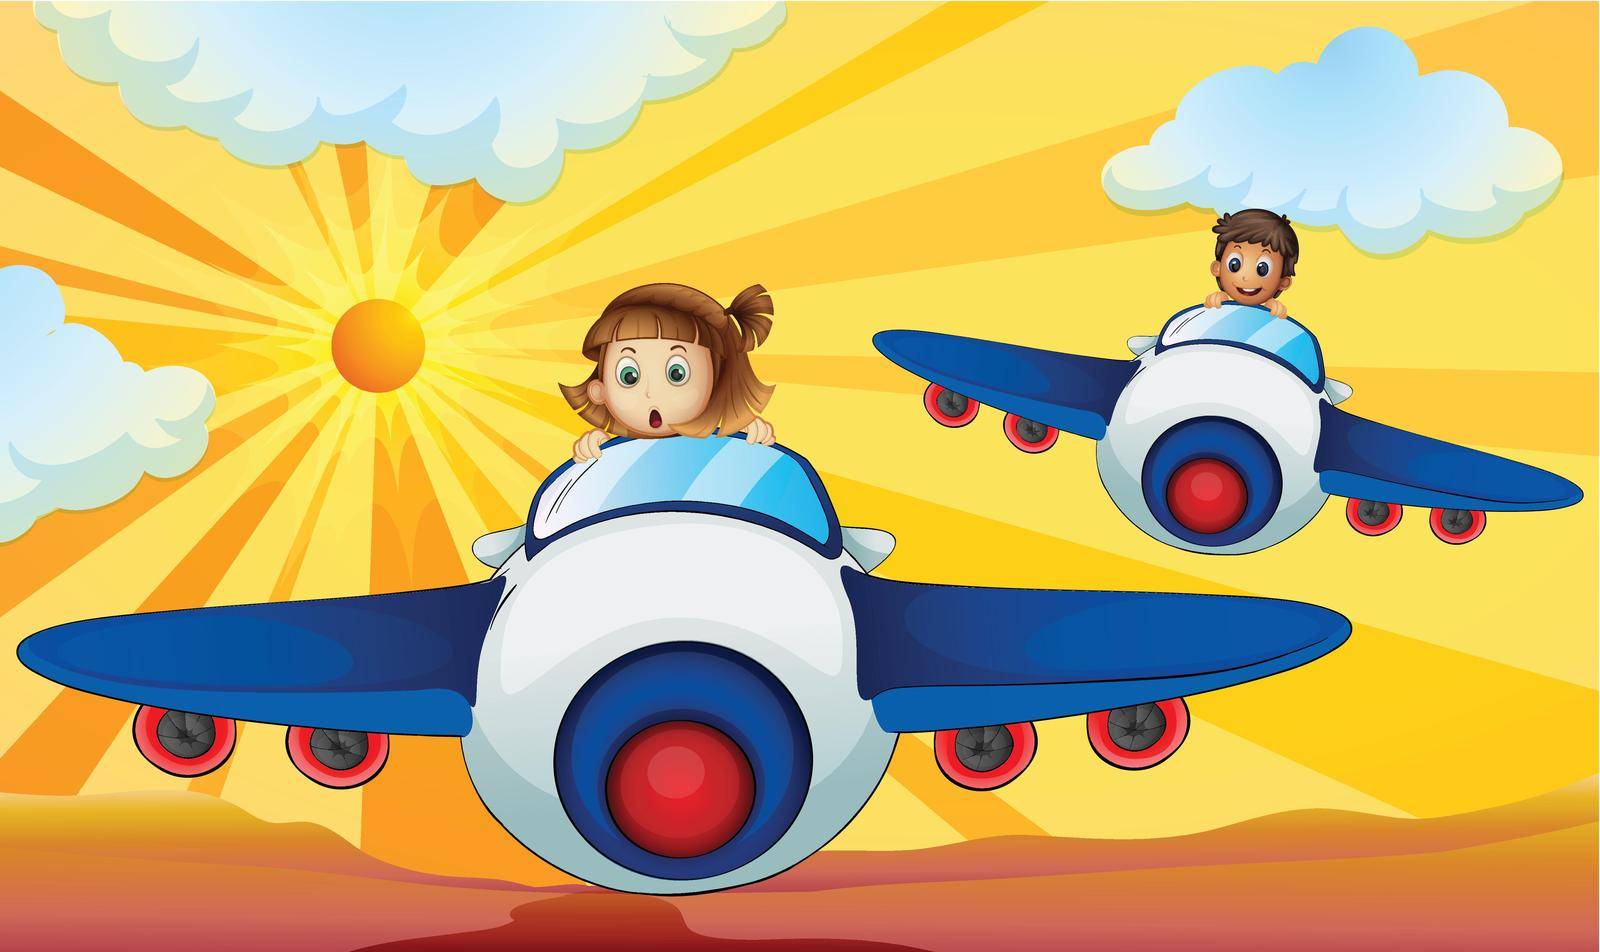 Kids driving aeroplane by iimages